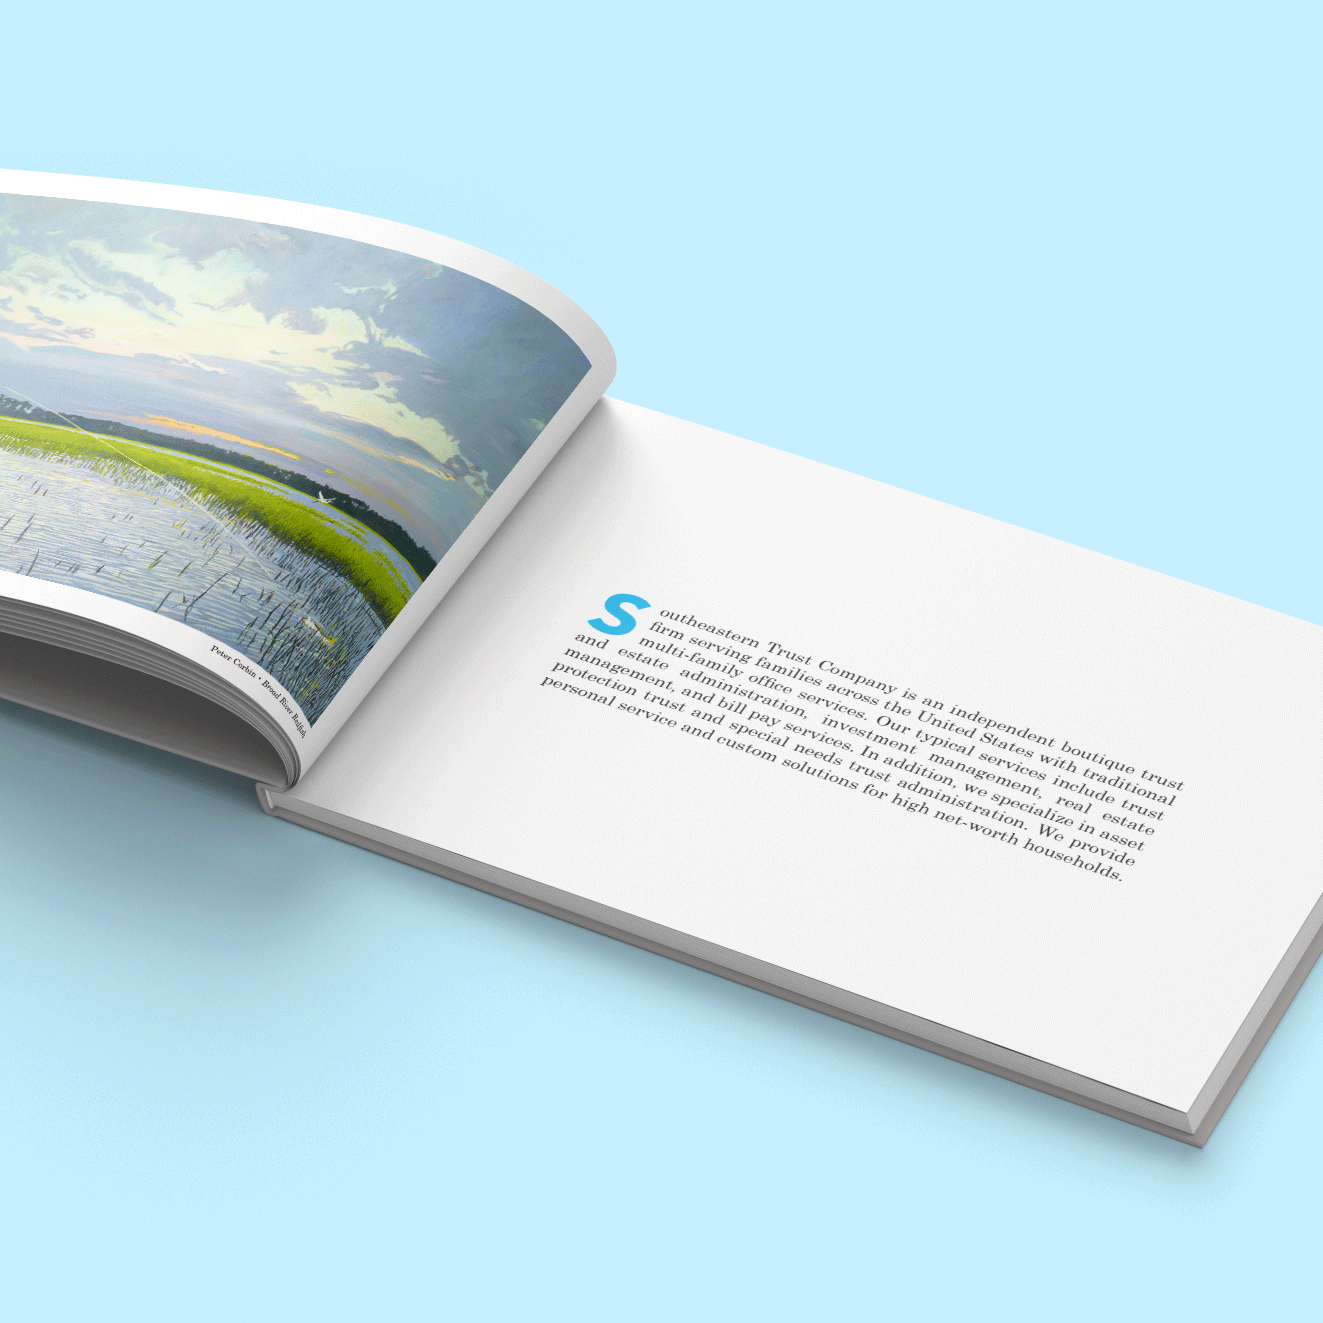 SETCO pamphlet design